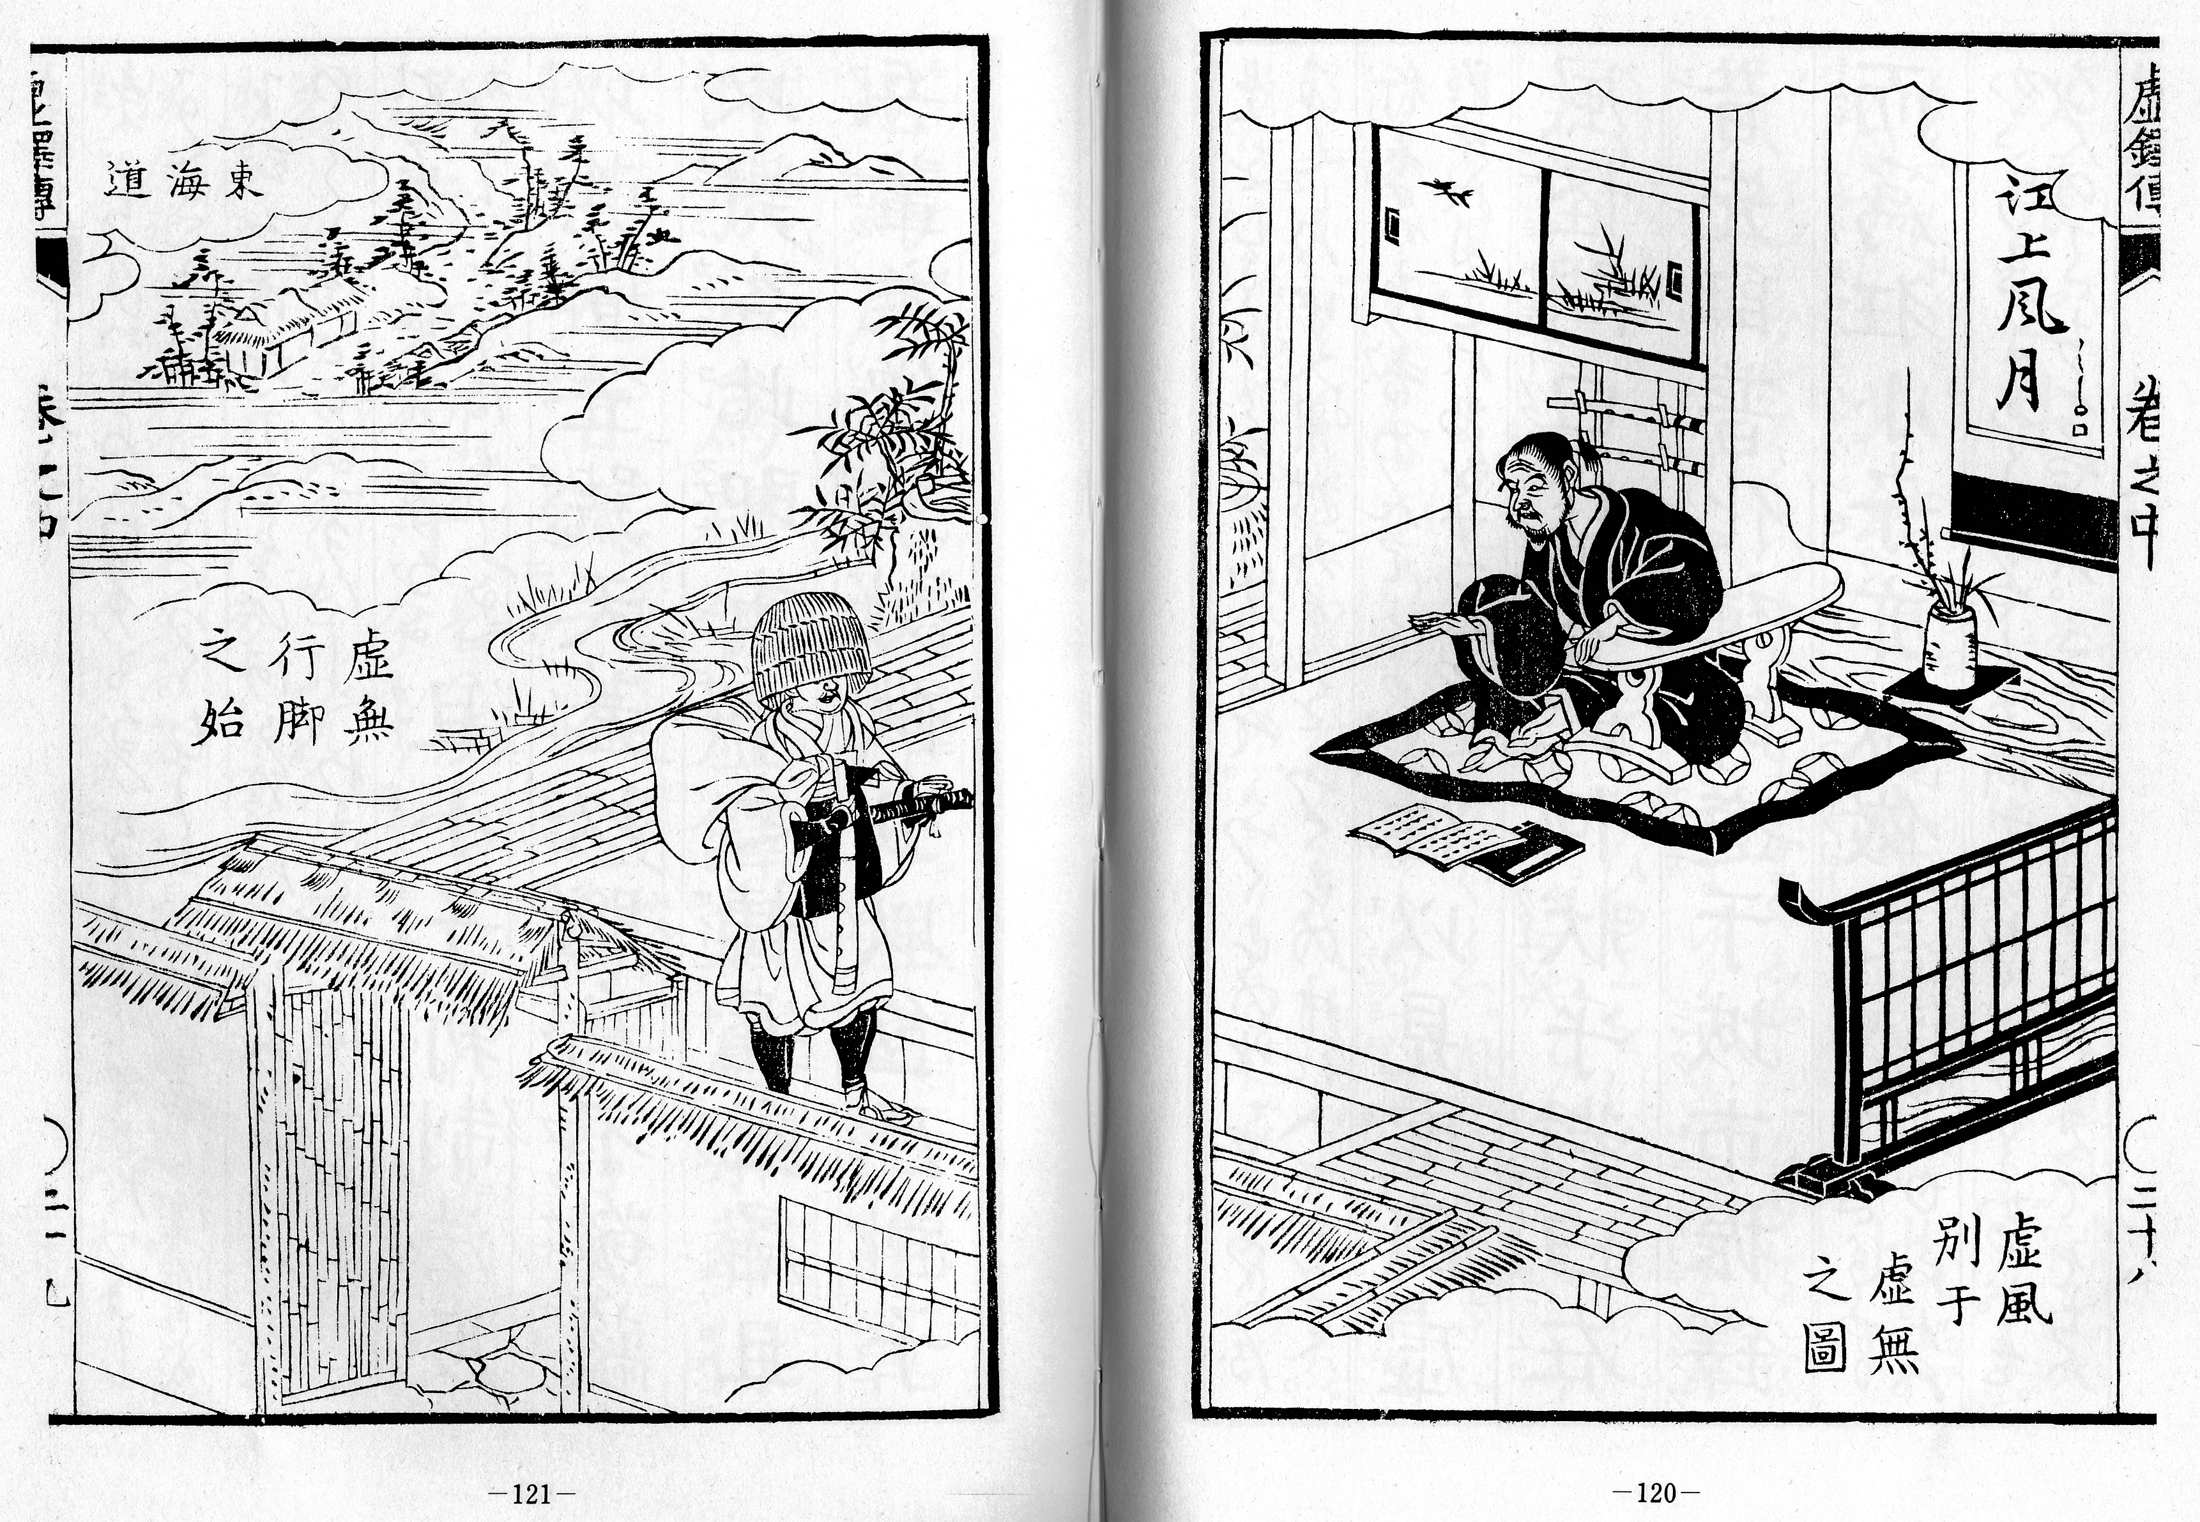 Kyotaku denki kokujikai illustration pp. 120-121